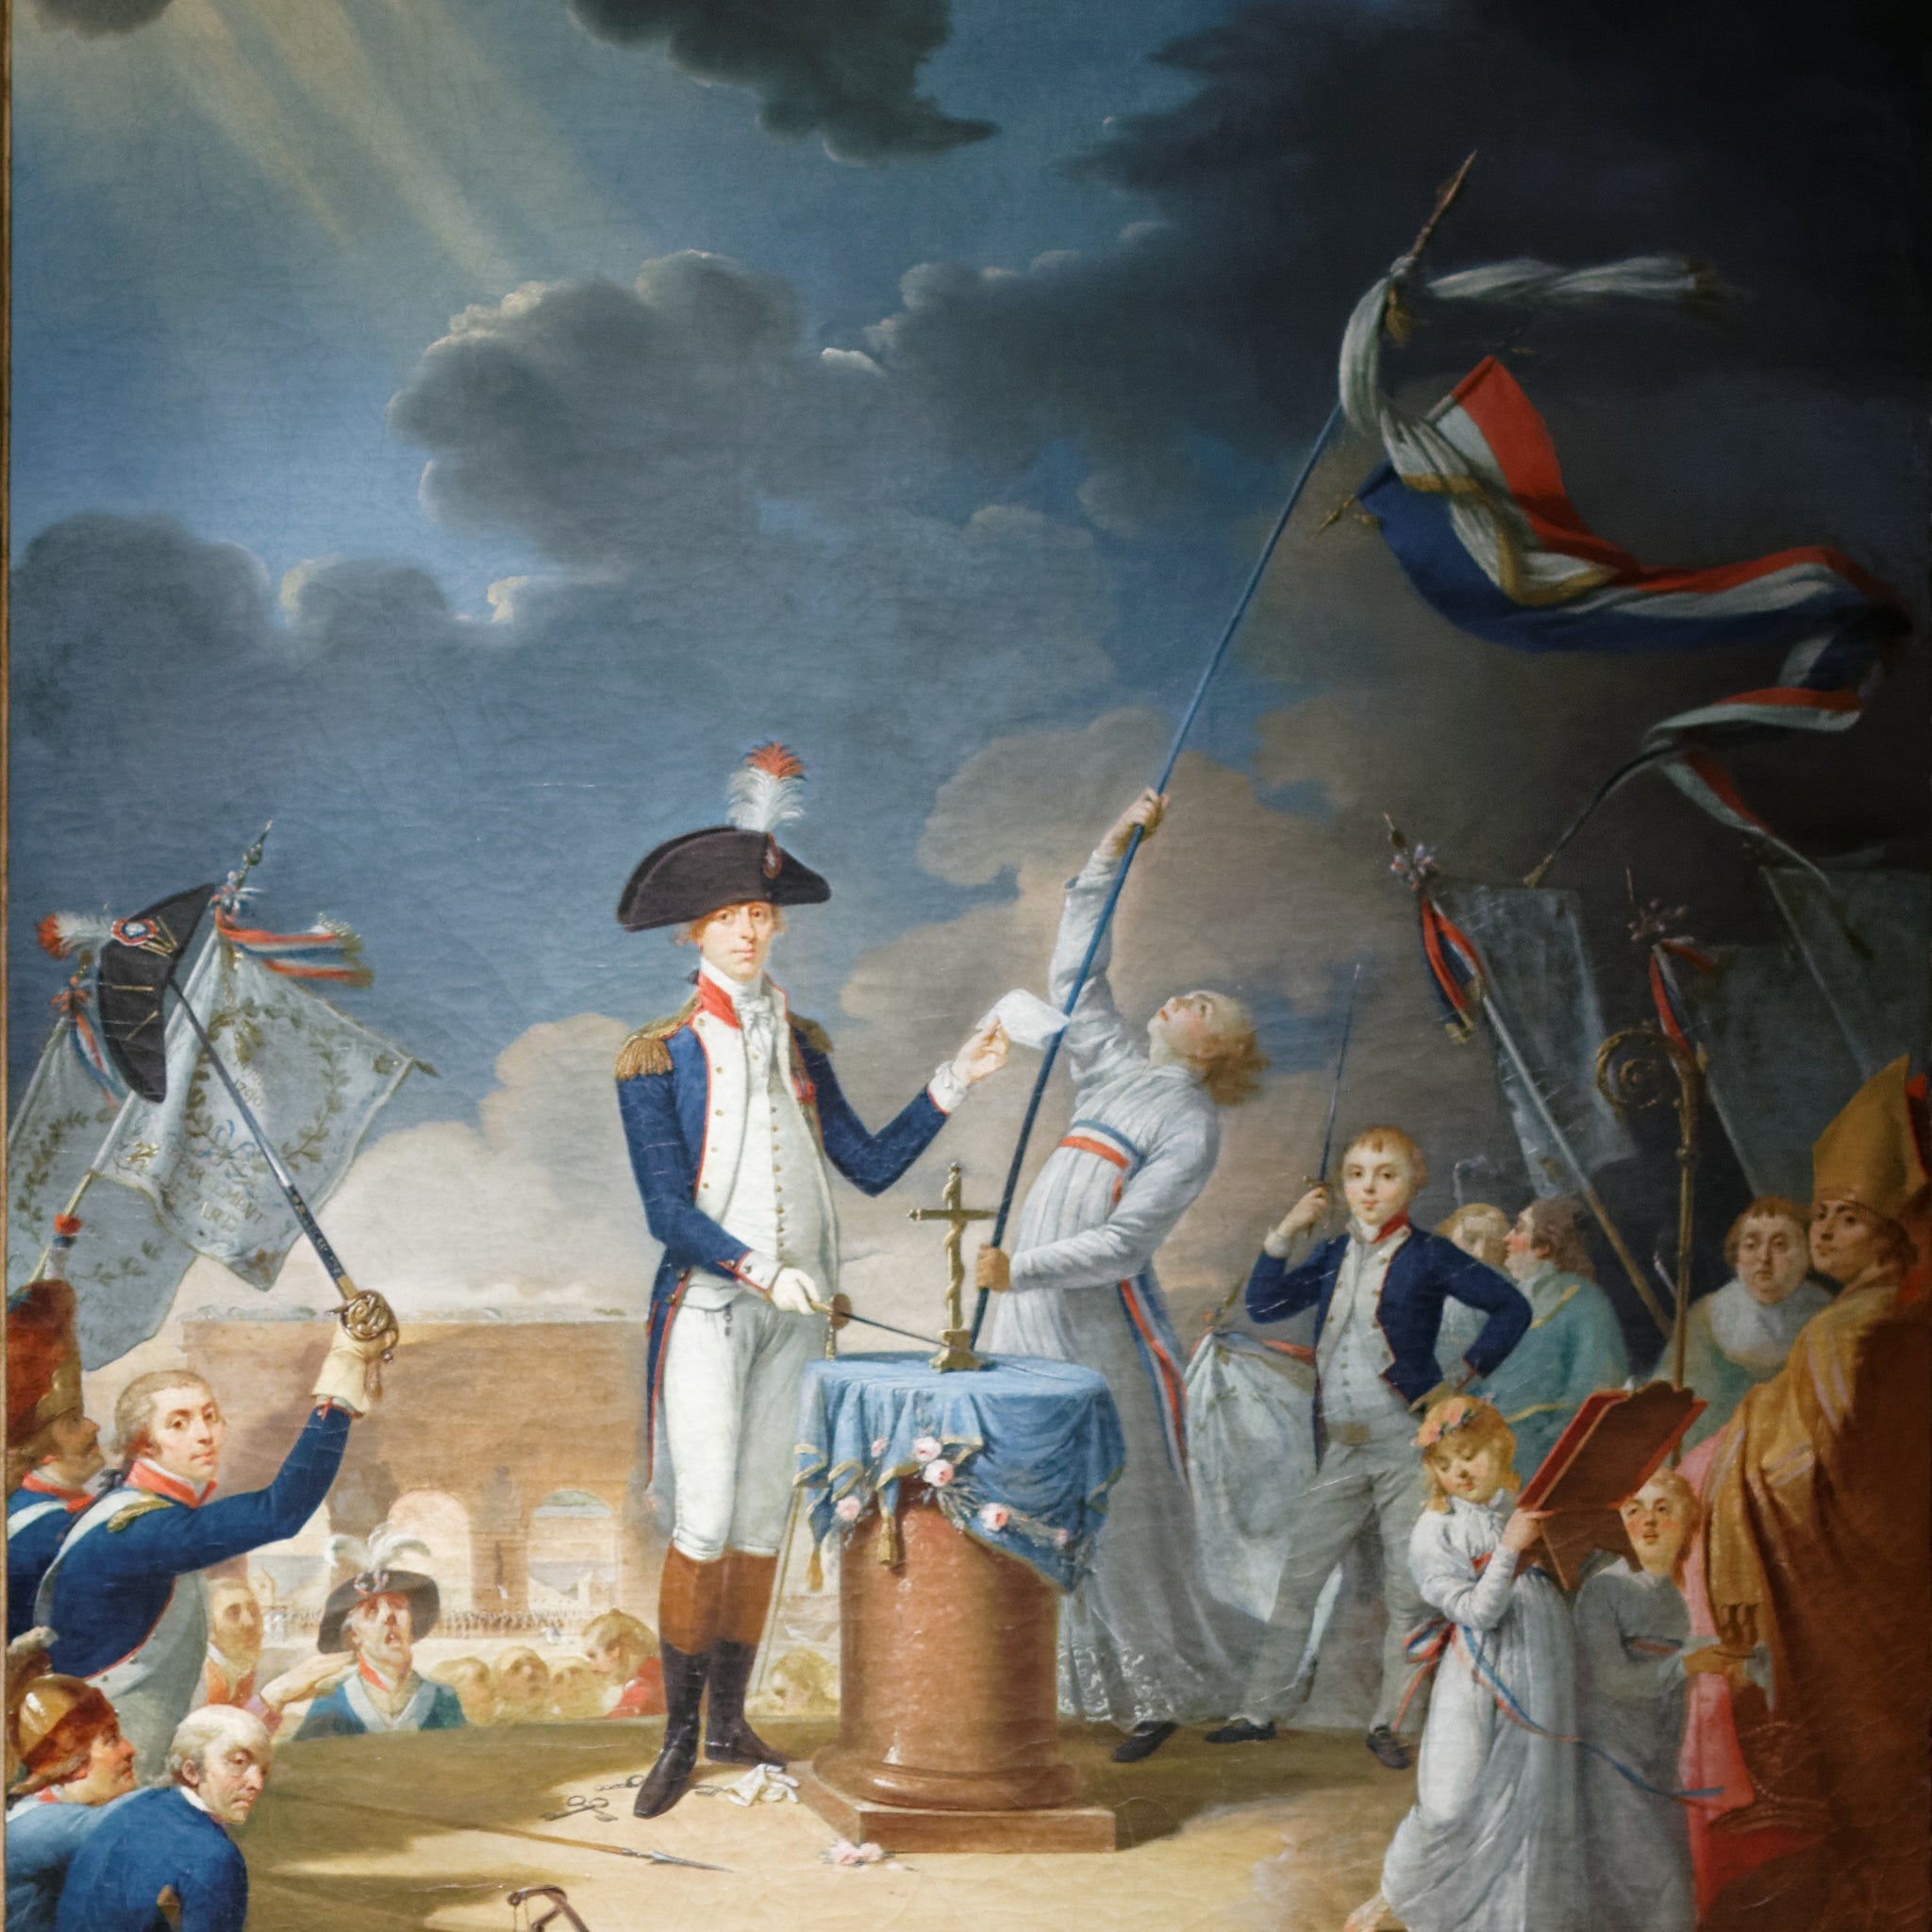 Le serment de Lafayette à la fête de la Fédération - Jacque Louis David